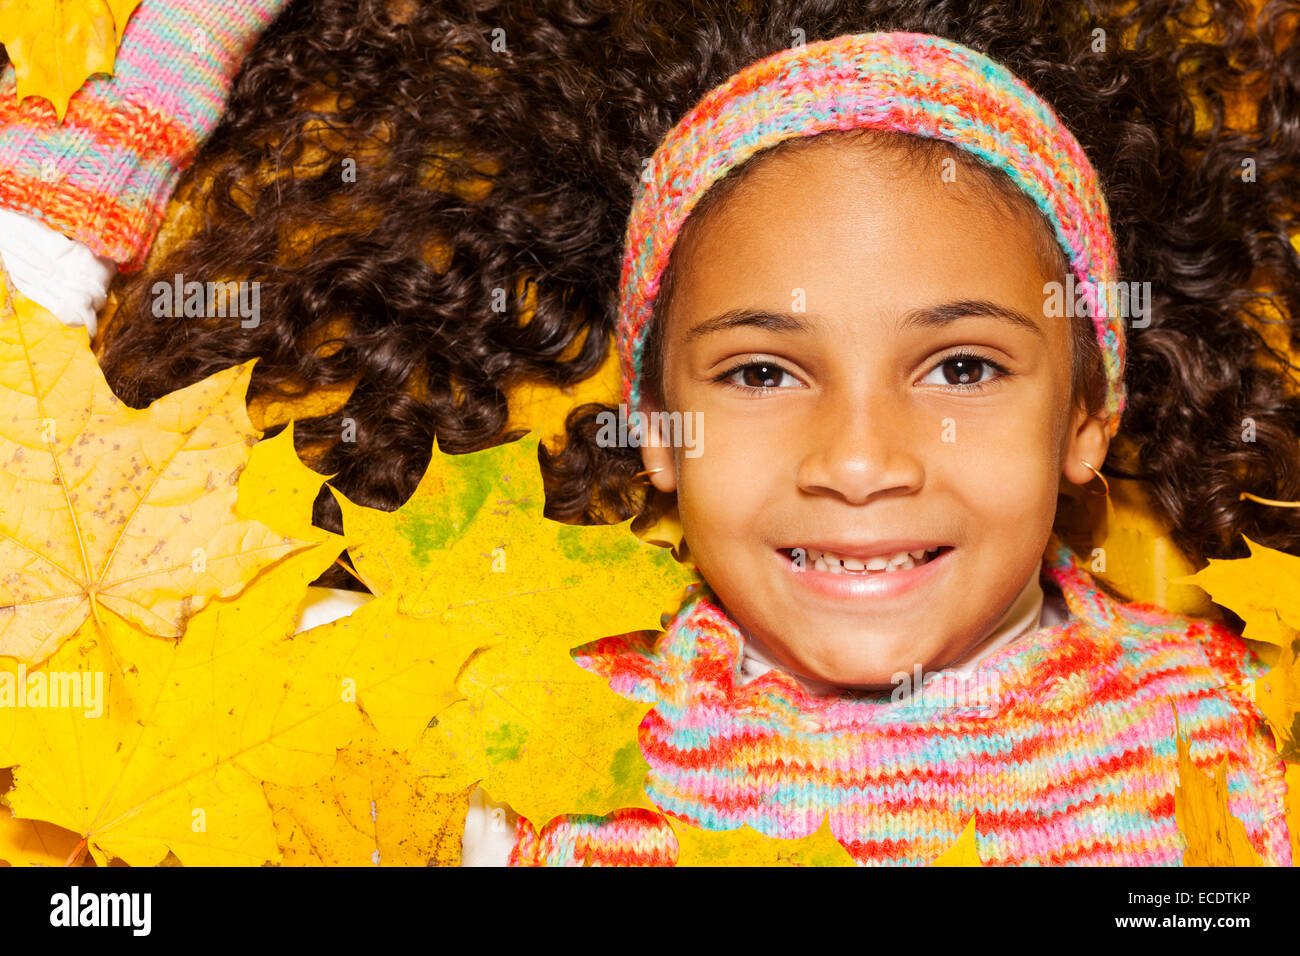 Jeune fille africaine avec des cheveux bouclés dans les feuilles d'orange Banque D'Images